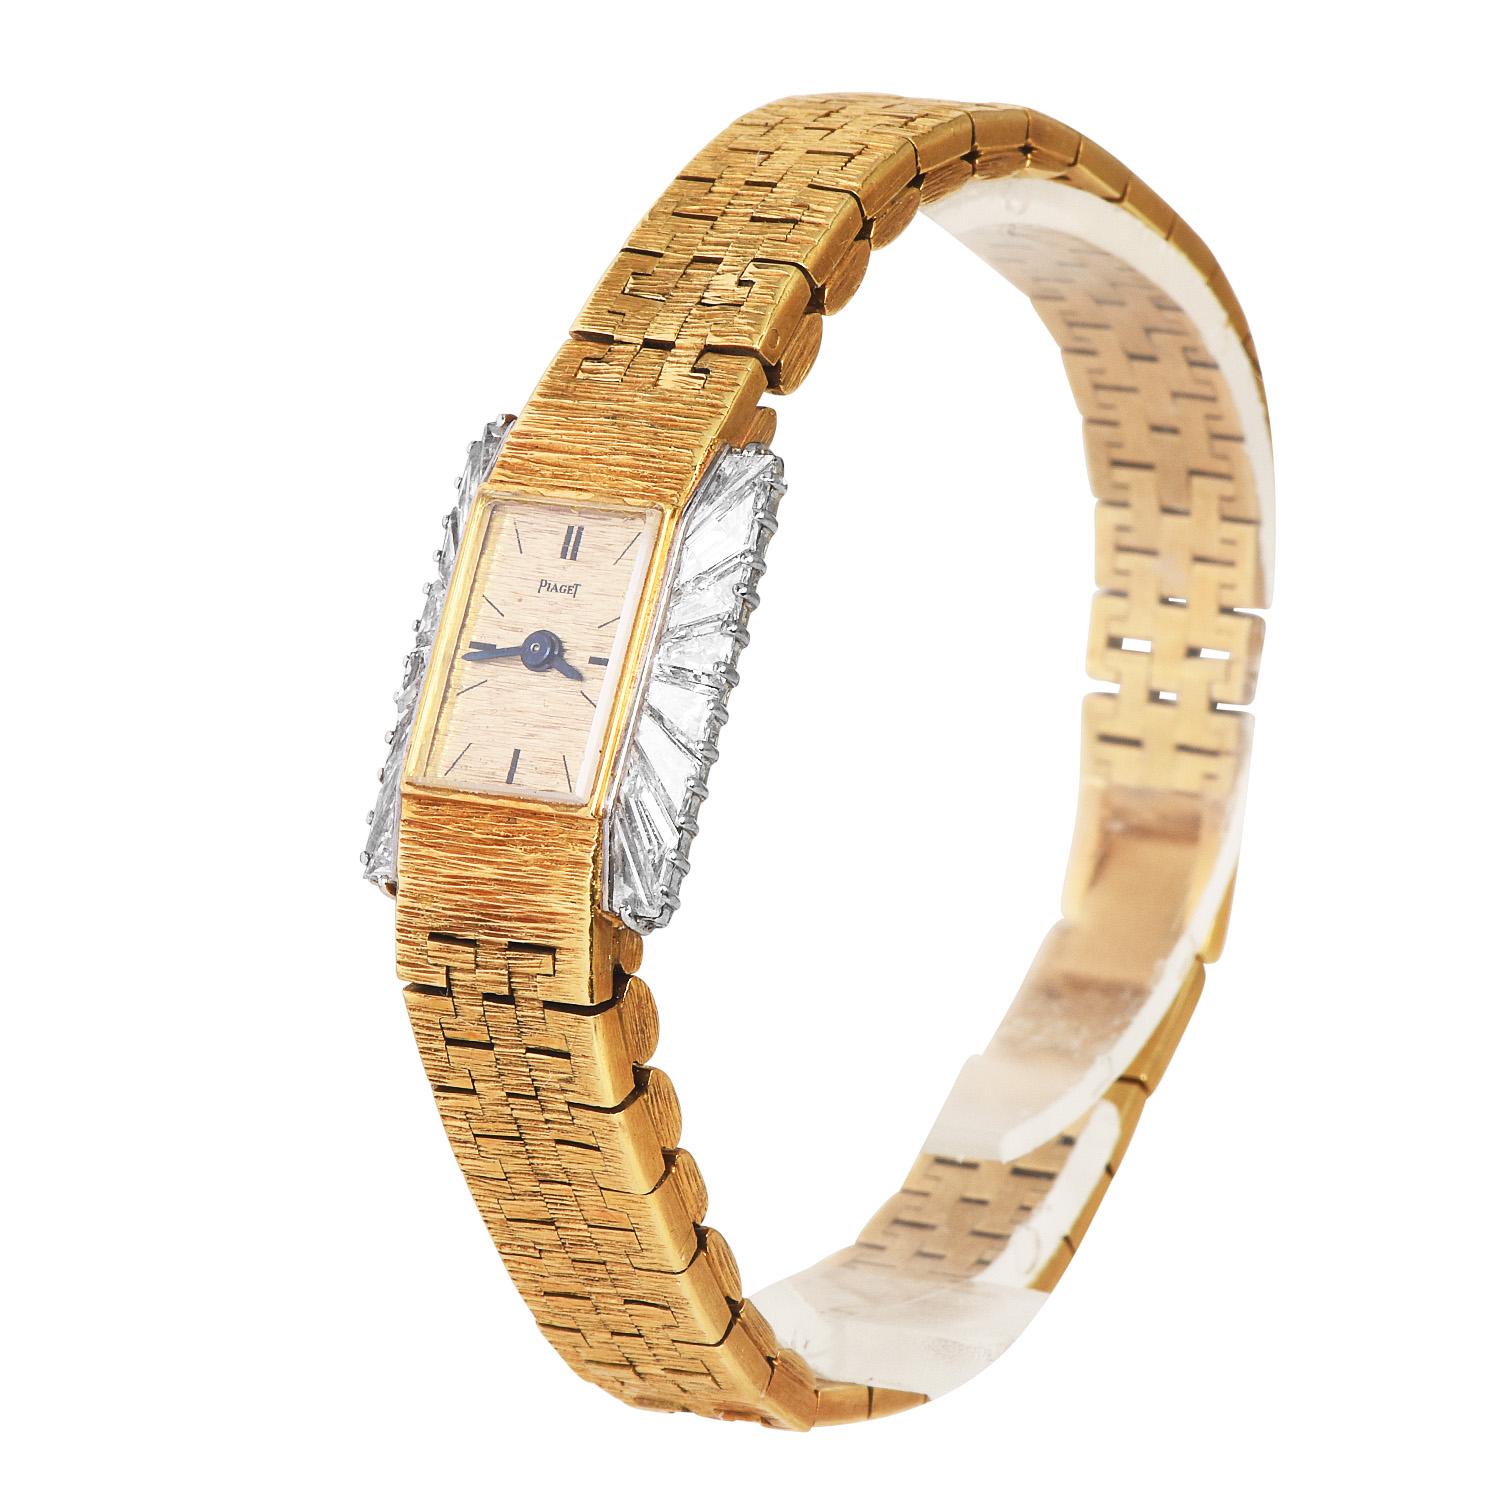 Einzigartige Vintage Piaget LAdies Armbanduhr. Ein Stück mit hohem Sammlerwert für ein zartes und elegantes Handgelenk.
Komplett aus 18 Karat Gelbgold gefertigt, mit Akzenten aus Weißgold. Goldfarbenes Zifferblatt mit mechanischem Piaget-Uhrwerk mit